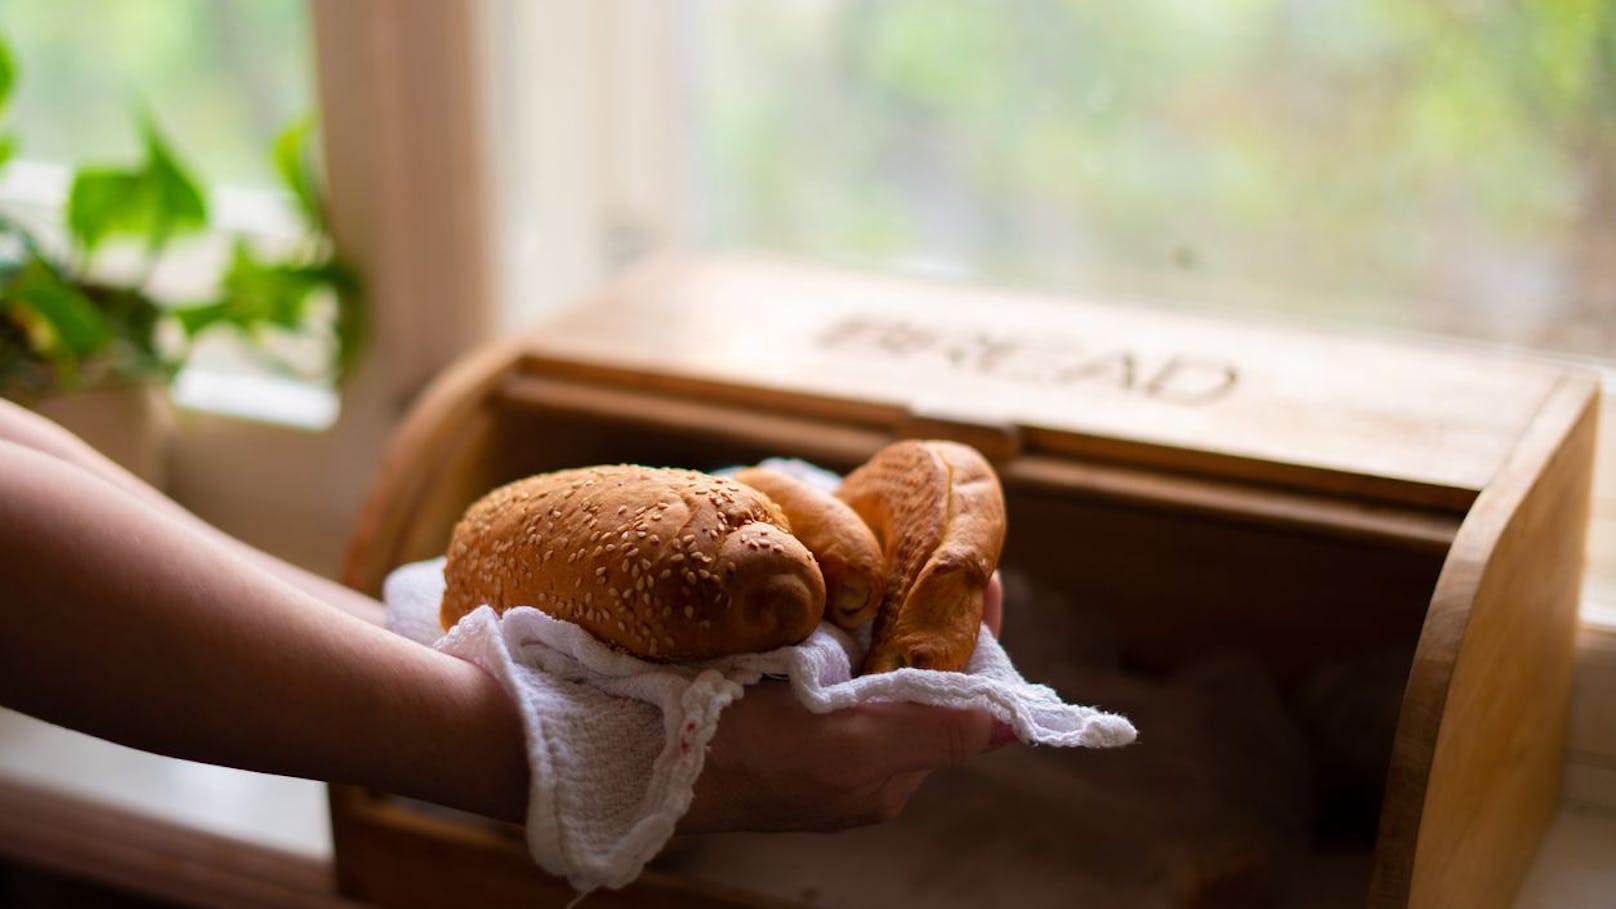 Halte deine Brot-Box vom Fenster und von der Mikrowelle fern, wenn die Backware lange halten sollte. Wasserdampf und Luftzüge sorgen nämlich dafür, dass das Brot anschimmelt oder zu viel Feuchtigkeit verliert.